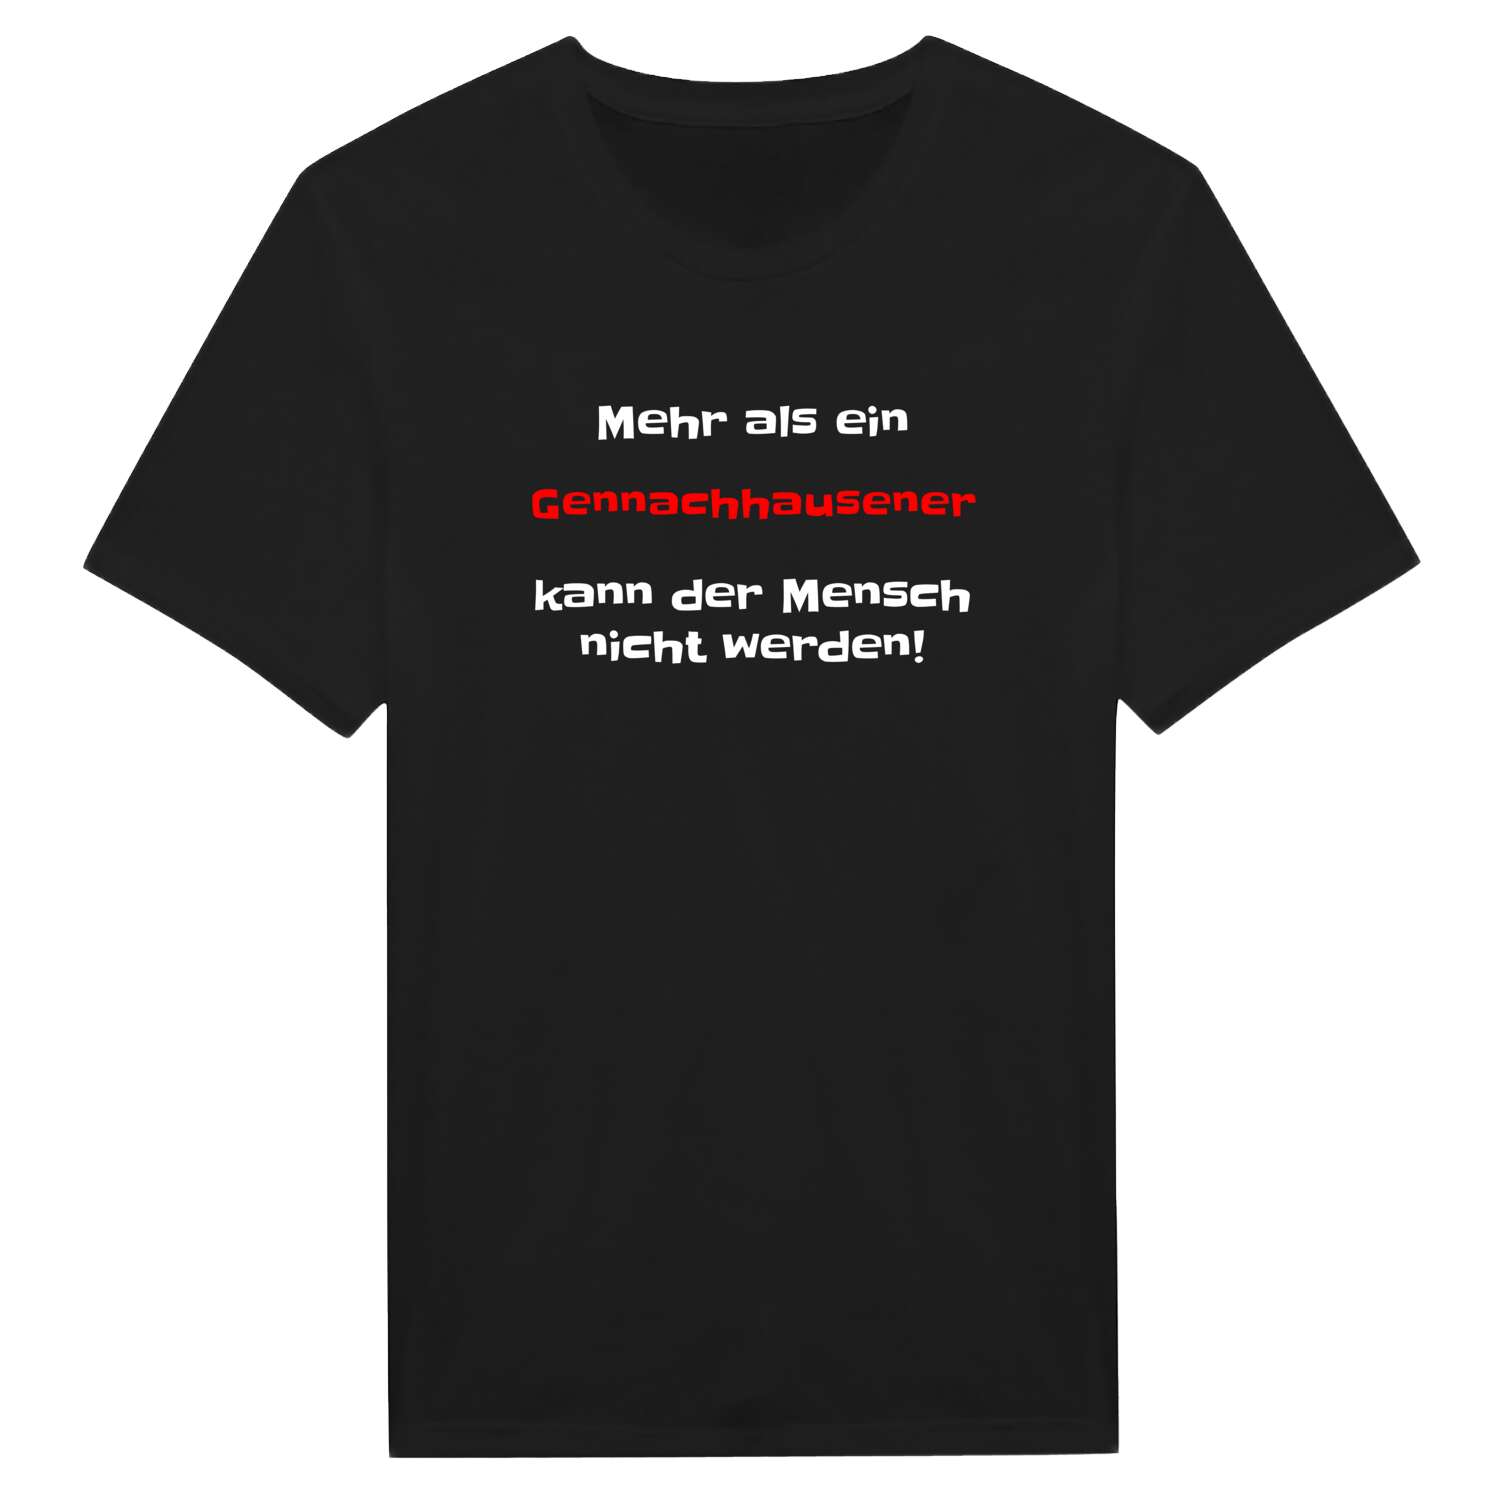 Gennachhausen T-Shirt »Mehr als ein«